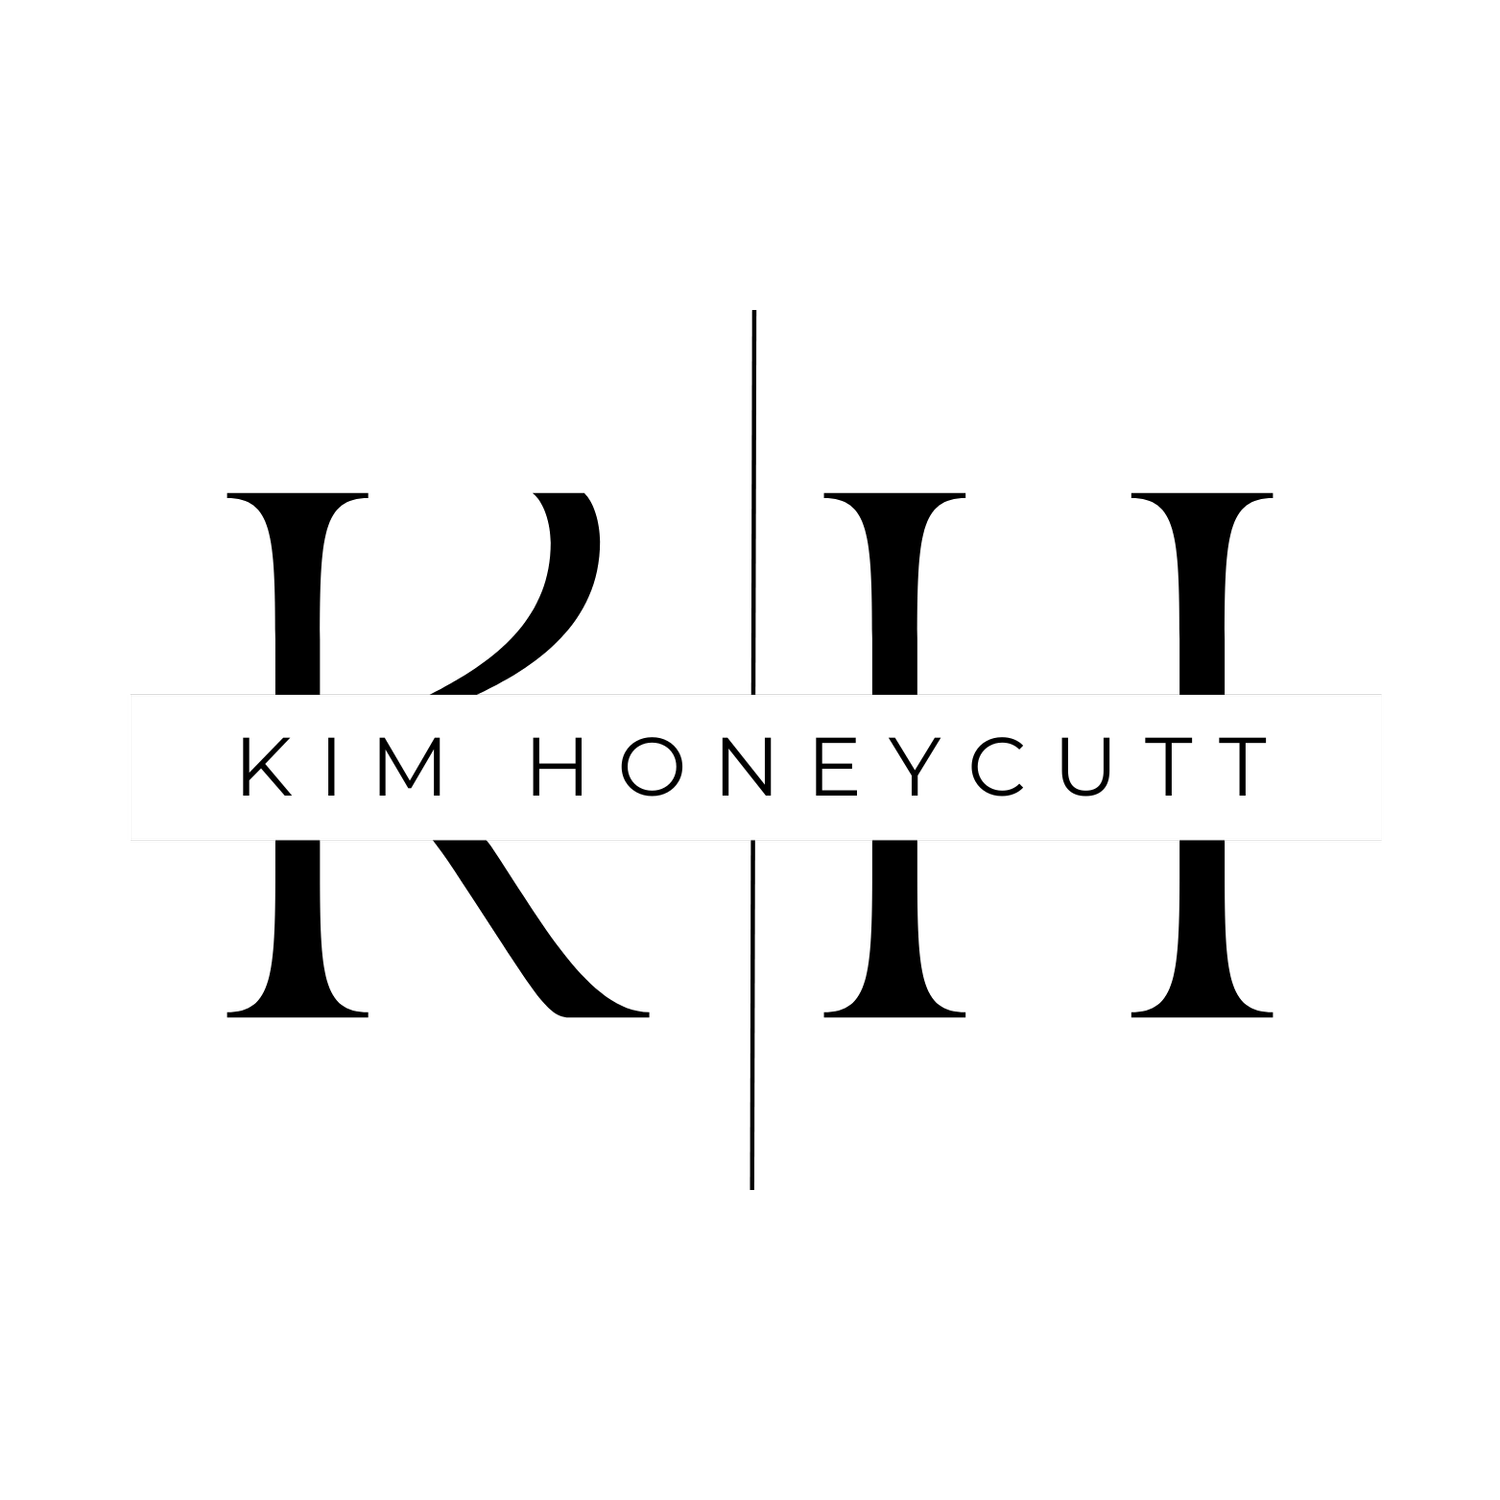 Kim Honeycutt